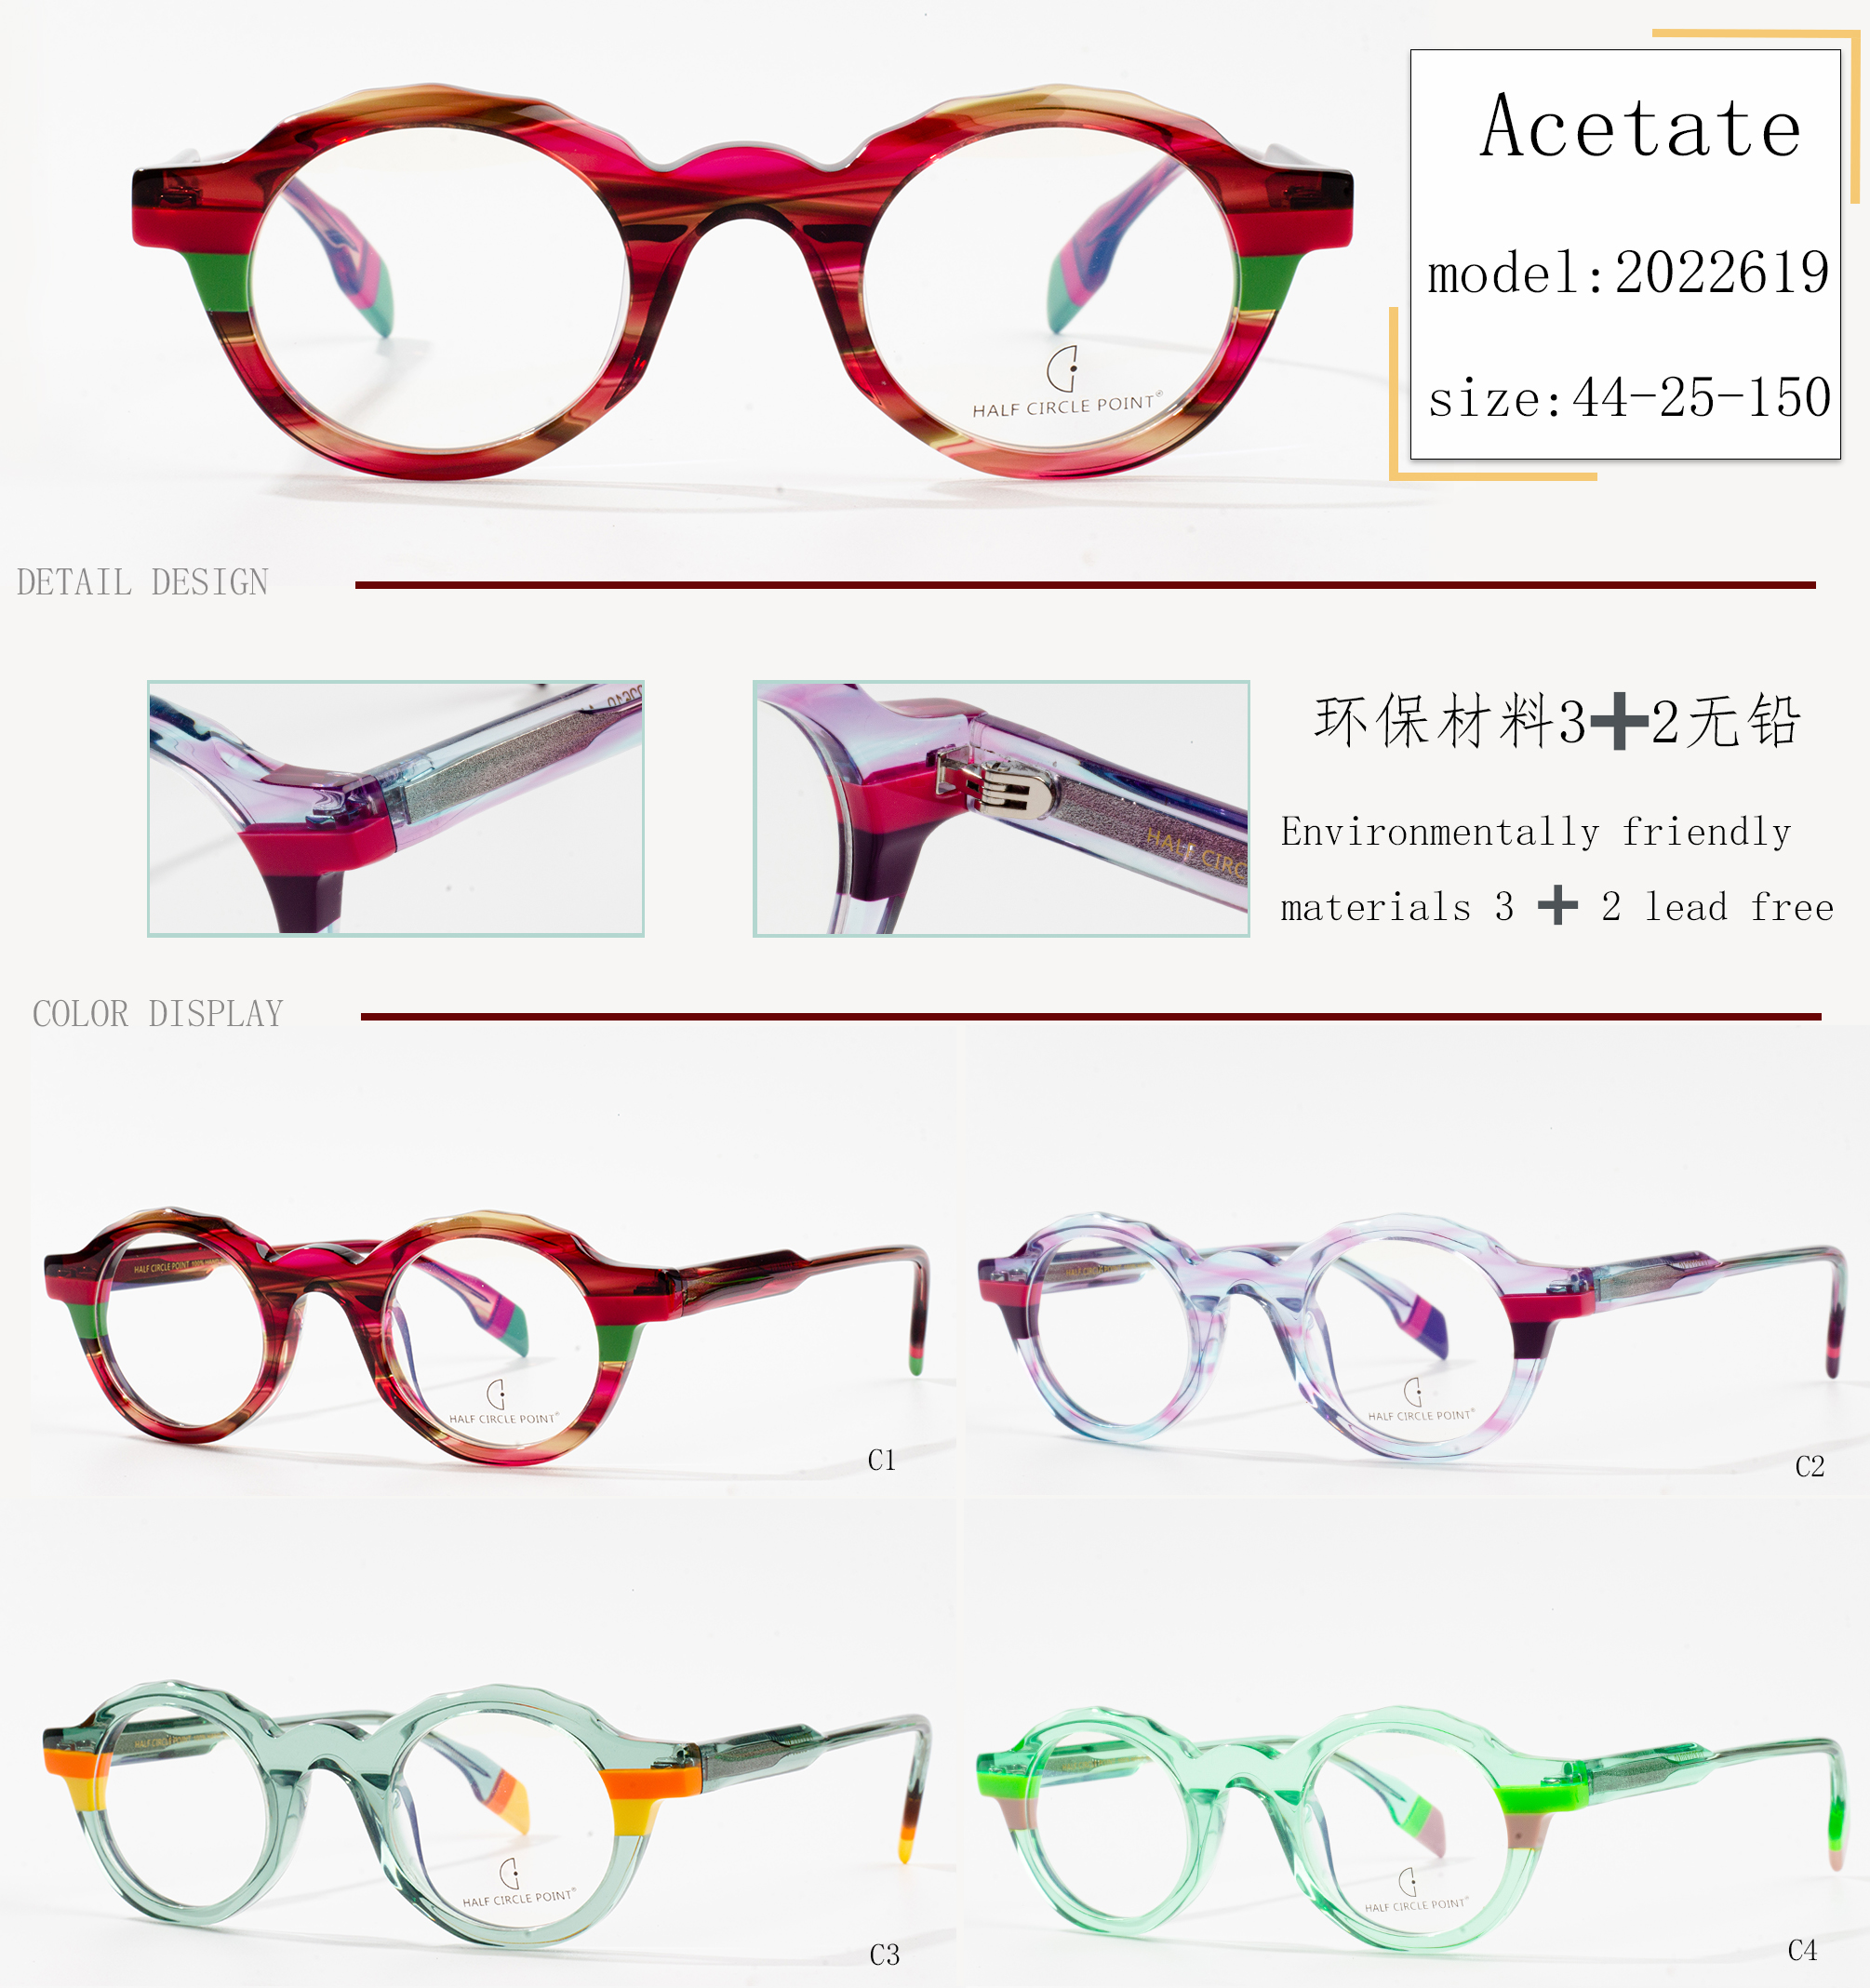 fabricant de marcs d'ulleres